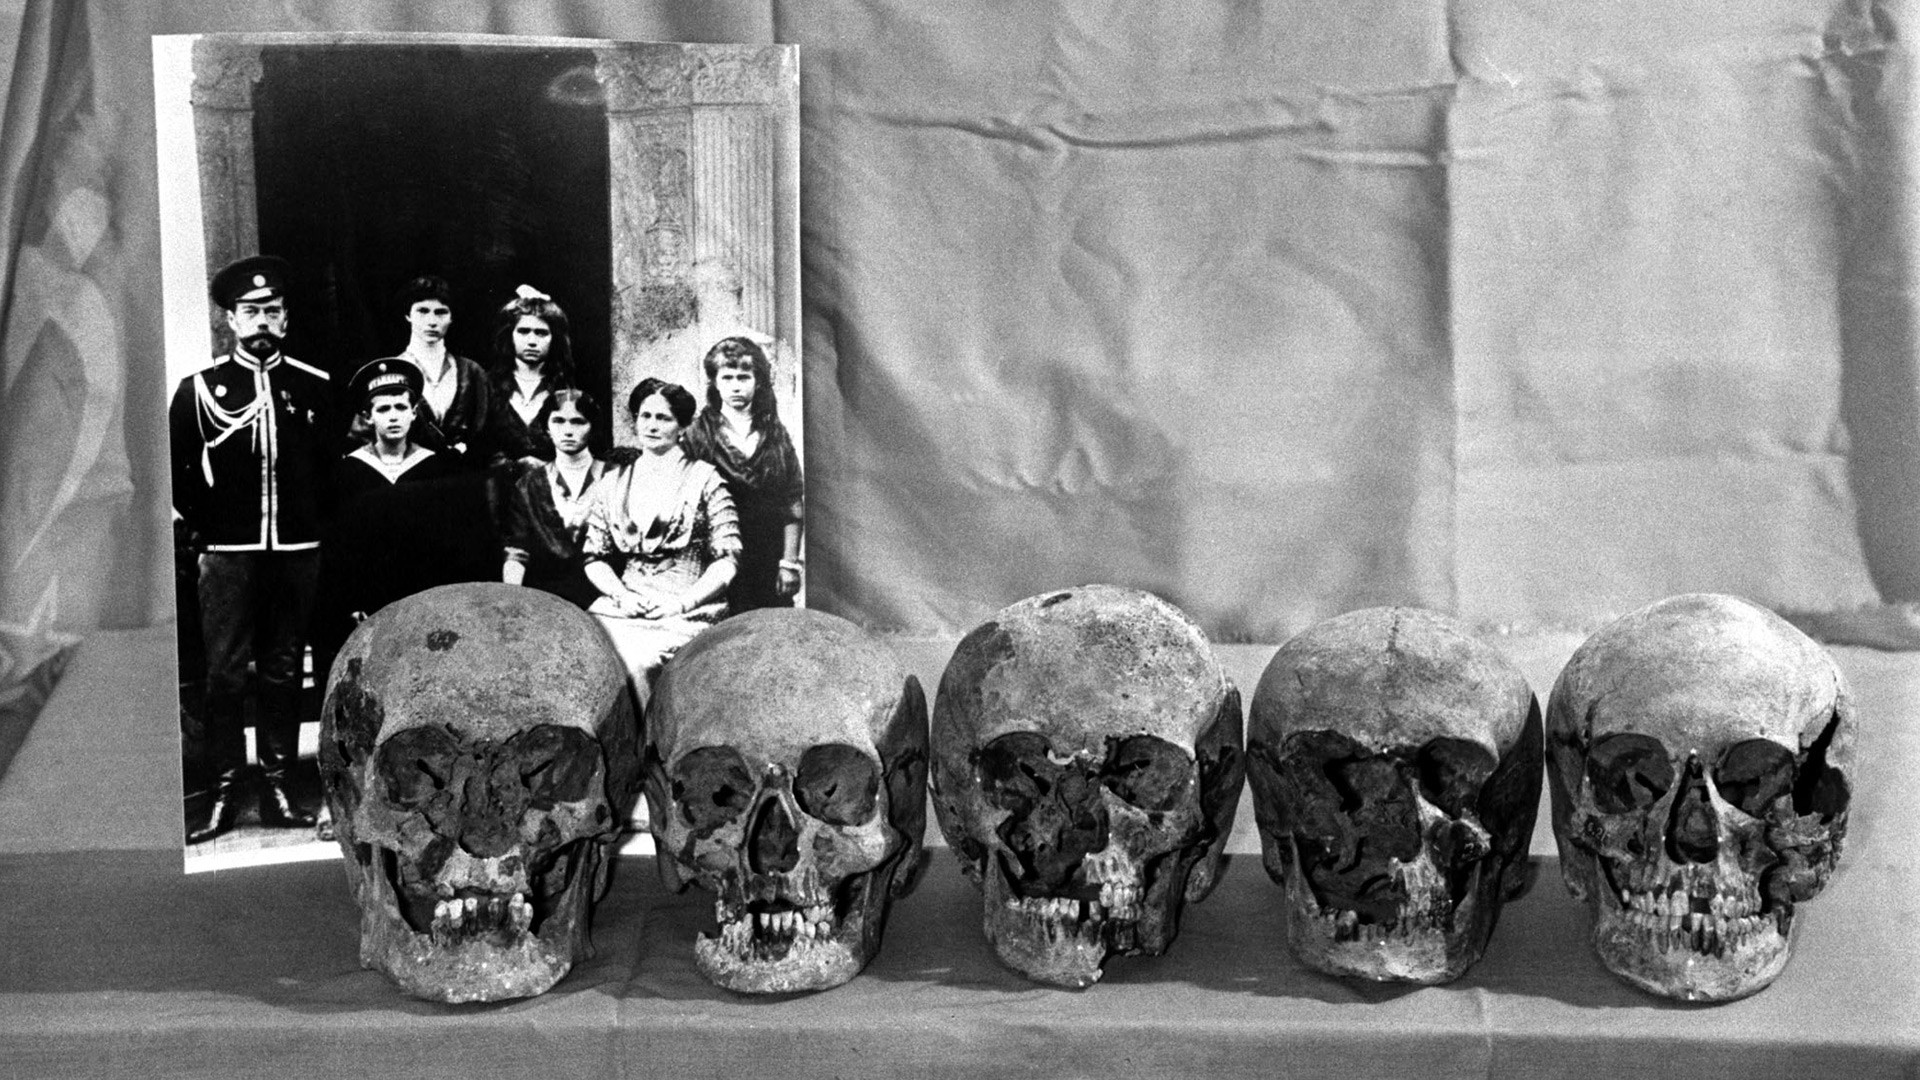 「皇帝一家の」頭蓋骨と推定されるもの。1993年